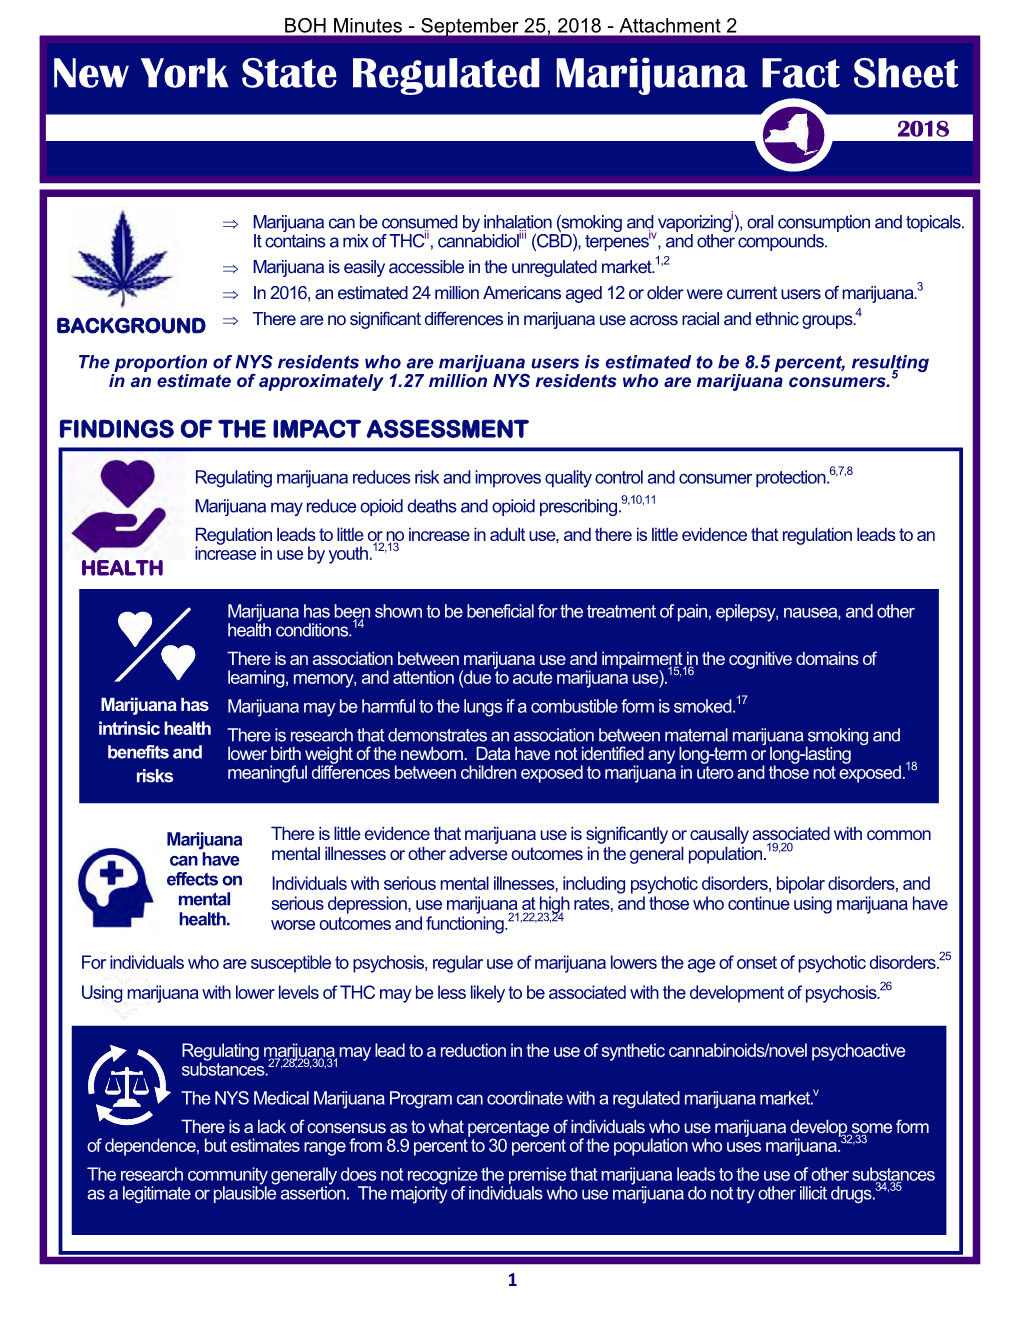 New York State Regulated Marijuana Fact Sheet 2018